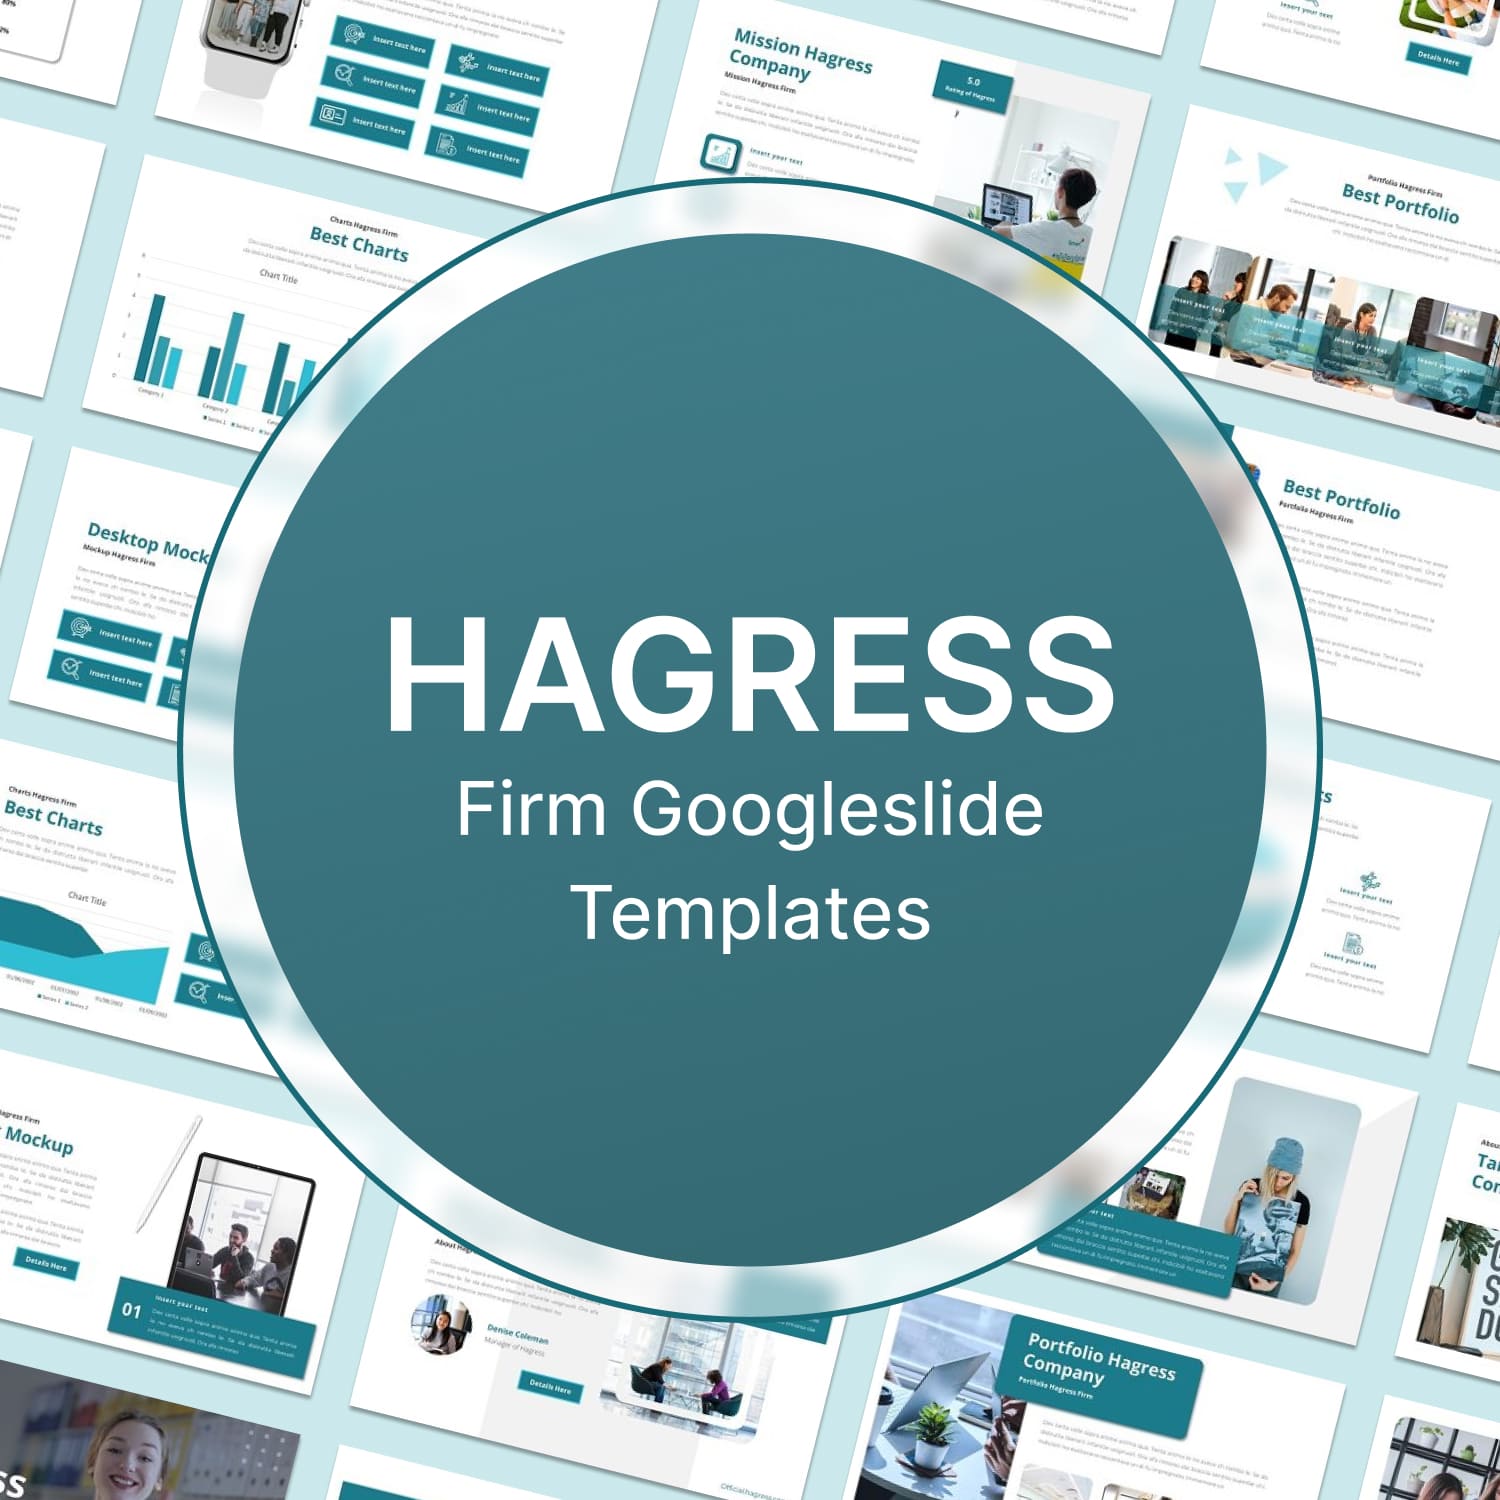 Hagress - Firm Googleslide Templates.